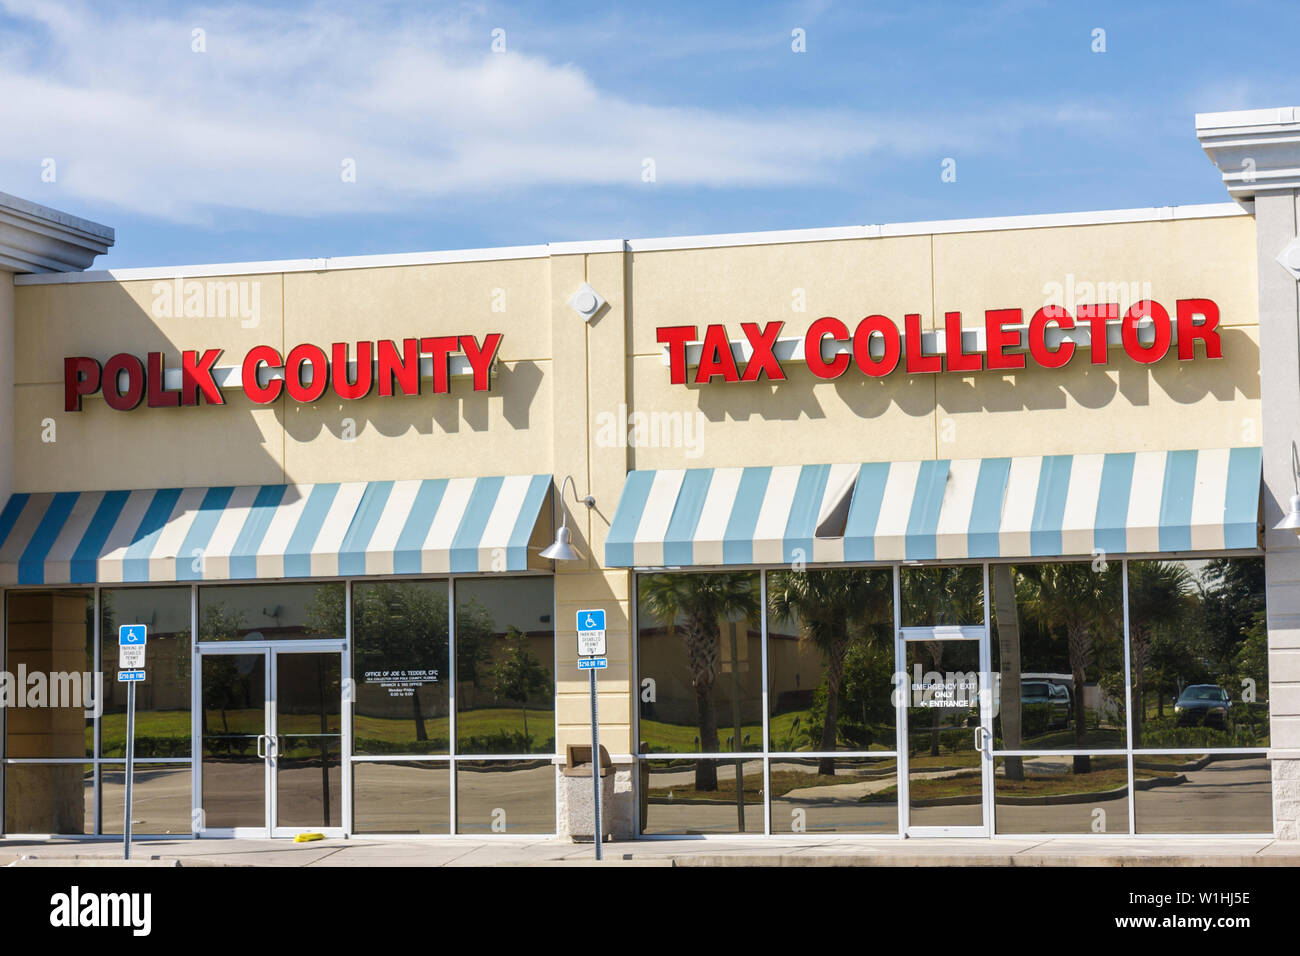 Lake Wales Florida, Strip Mall, negozio di fronte, Polk County Tax Collector, tenda, parcheggio, spazio per disabili, cartello, agenzia governativa, ufficio, vetro riflessio Foto Stock